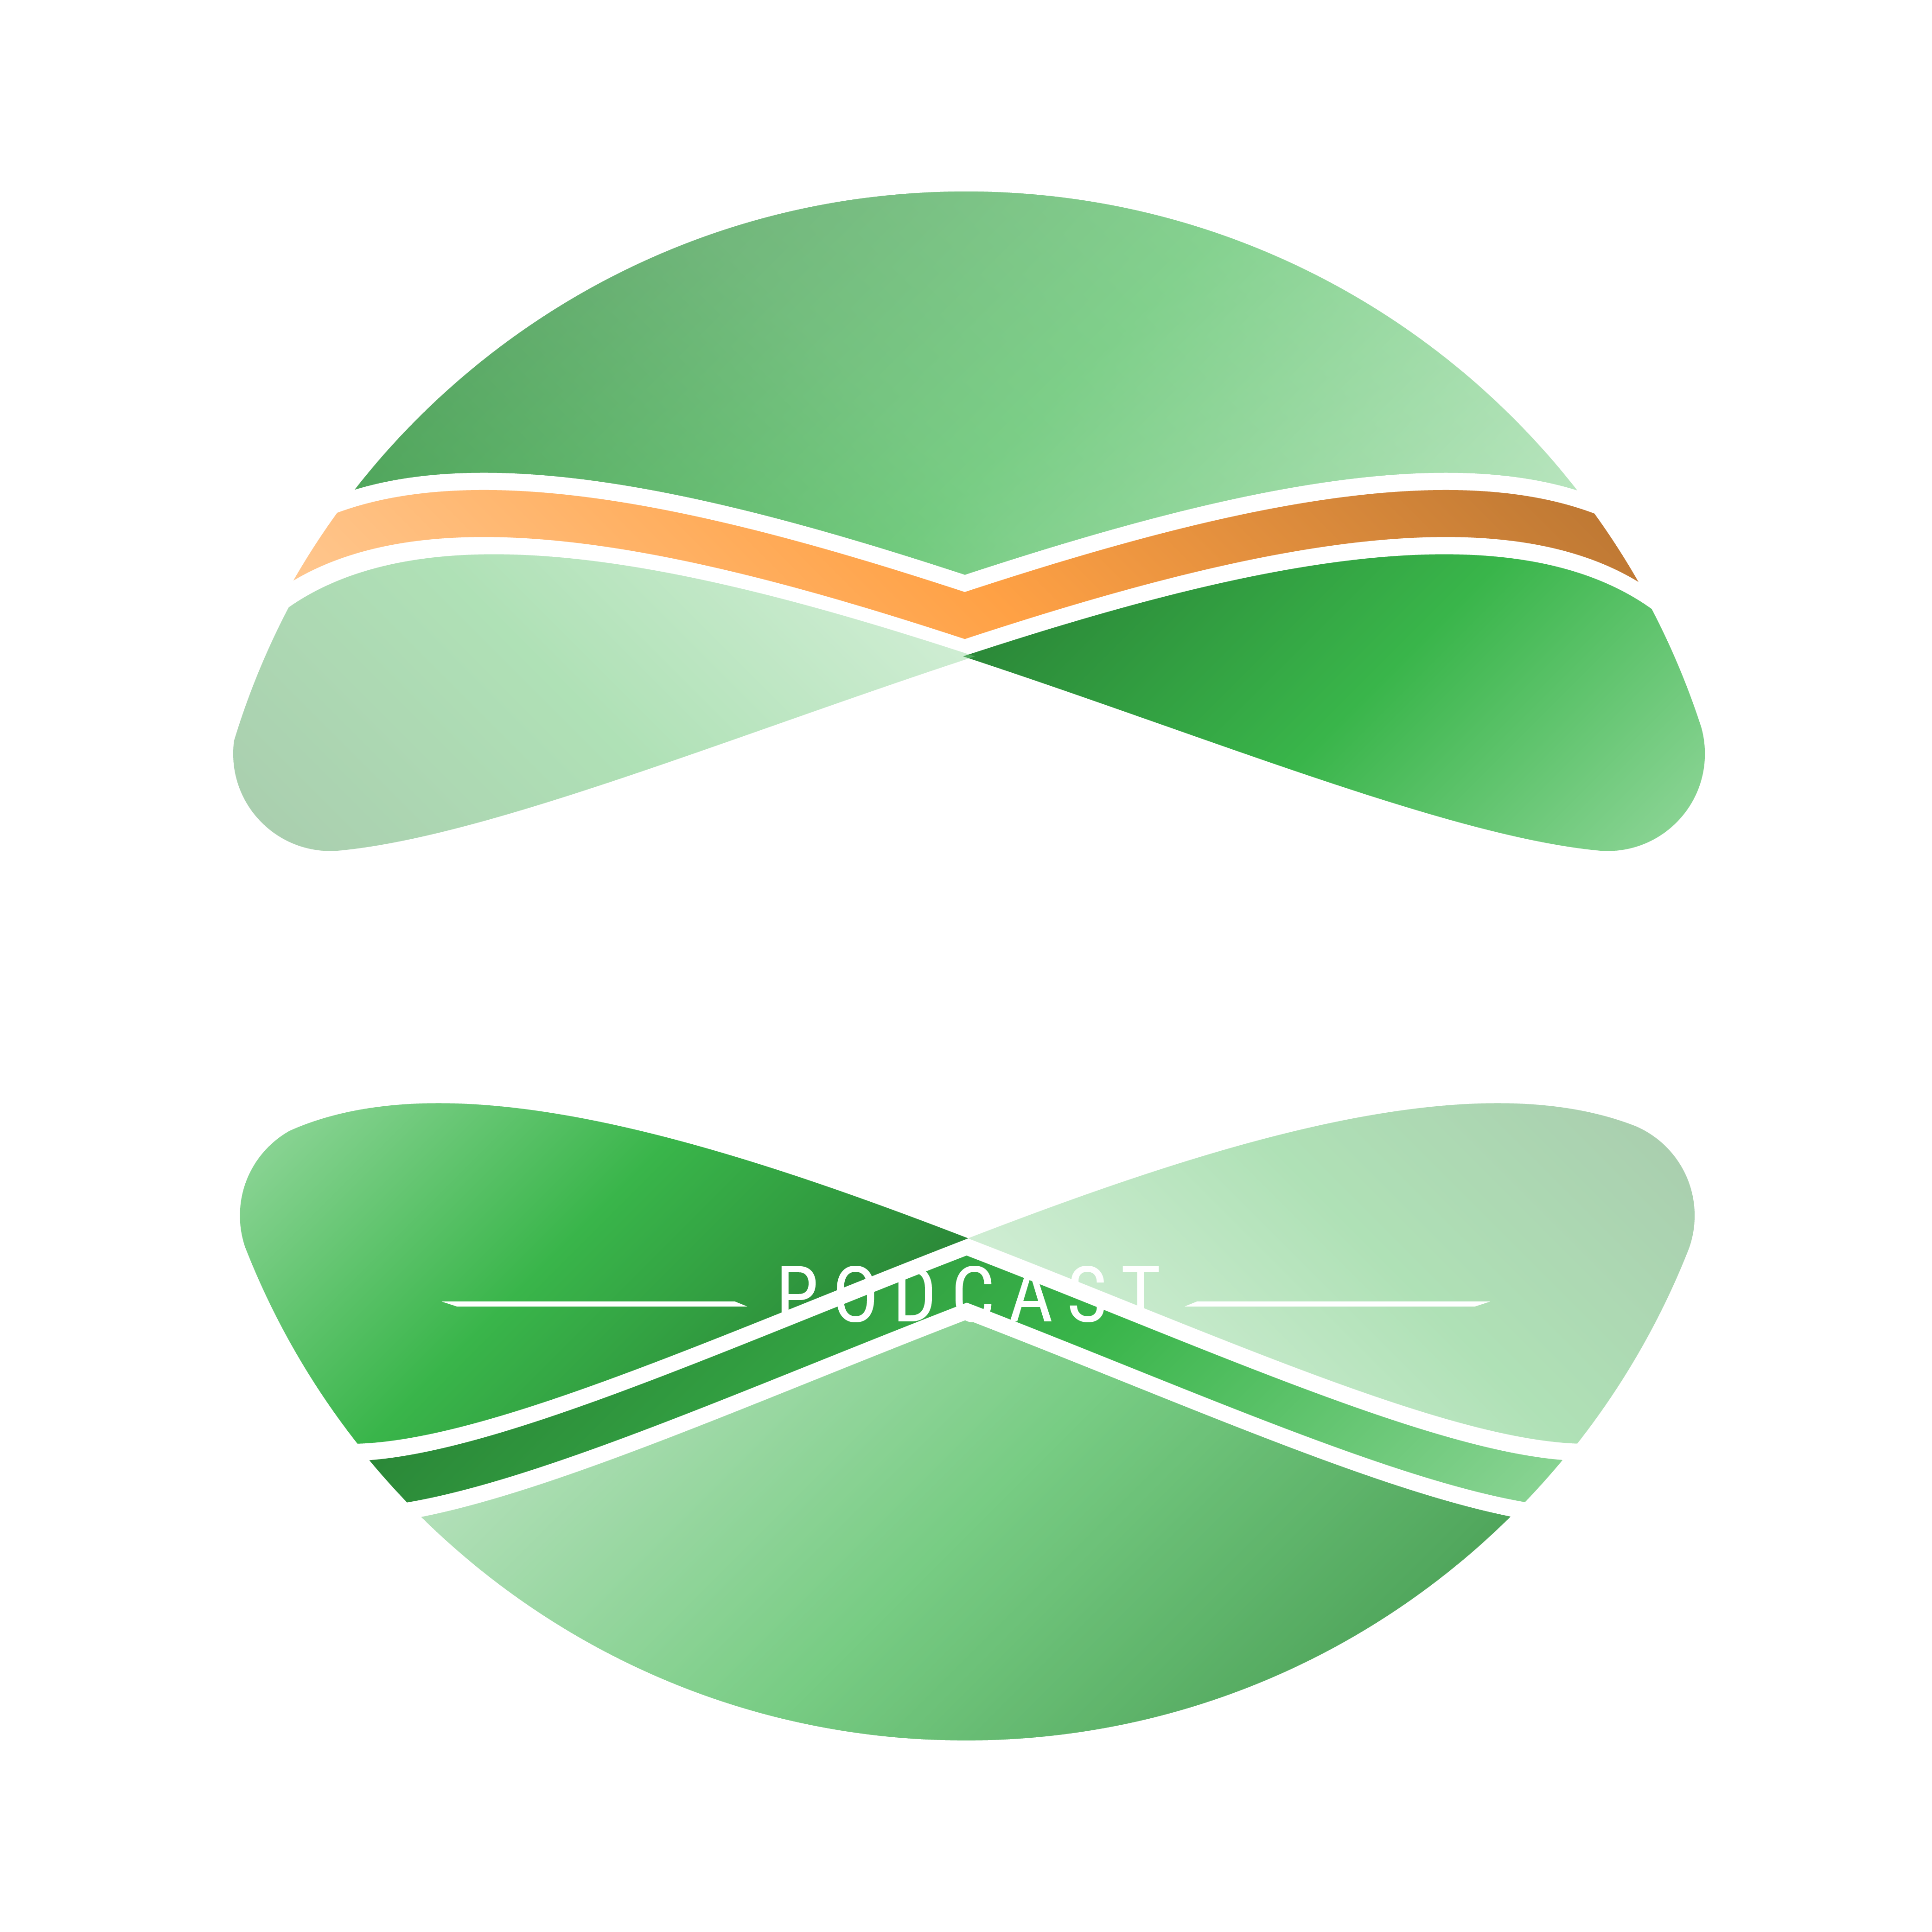 soul podcast logo